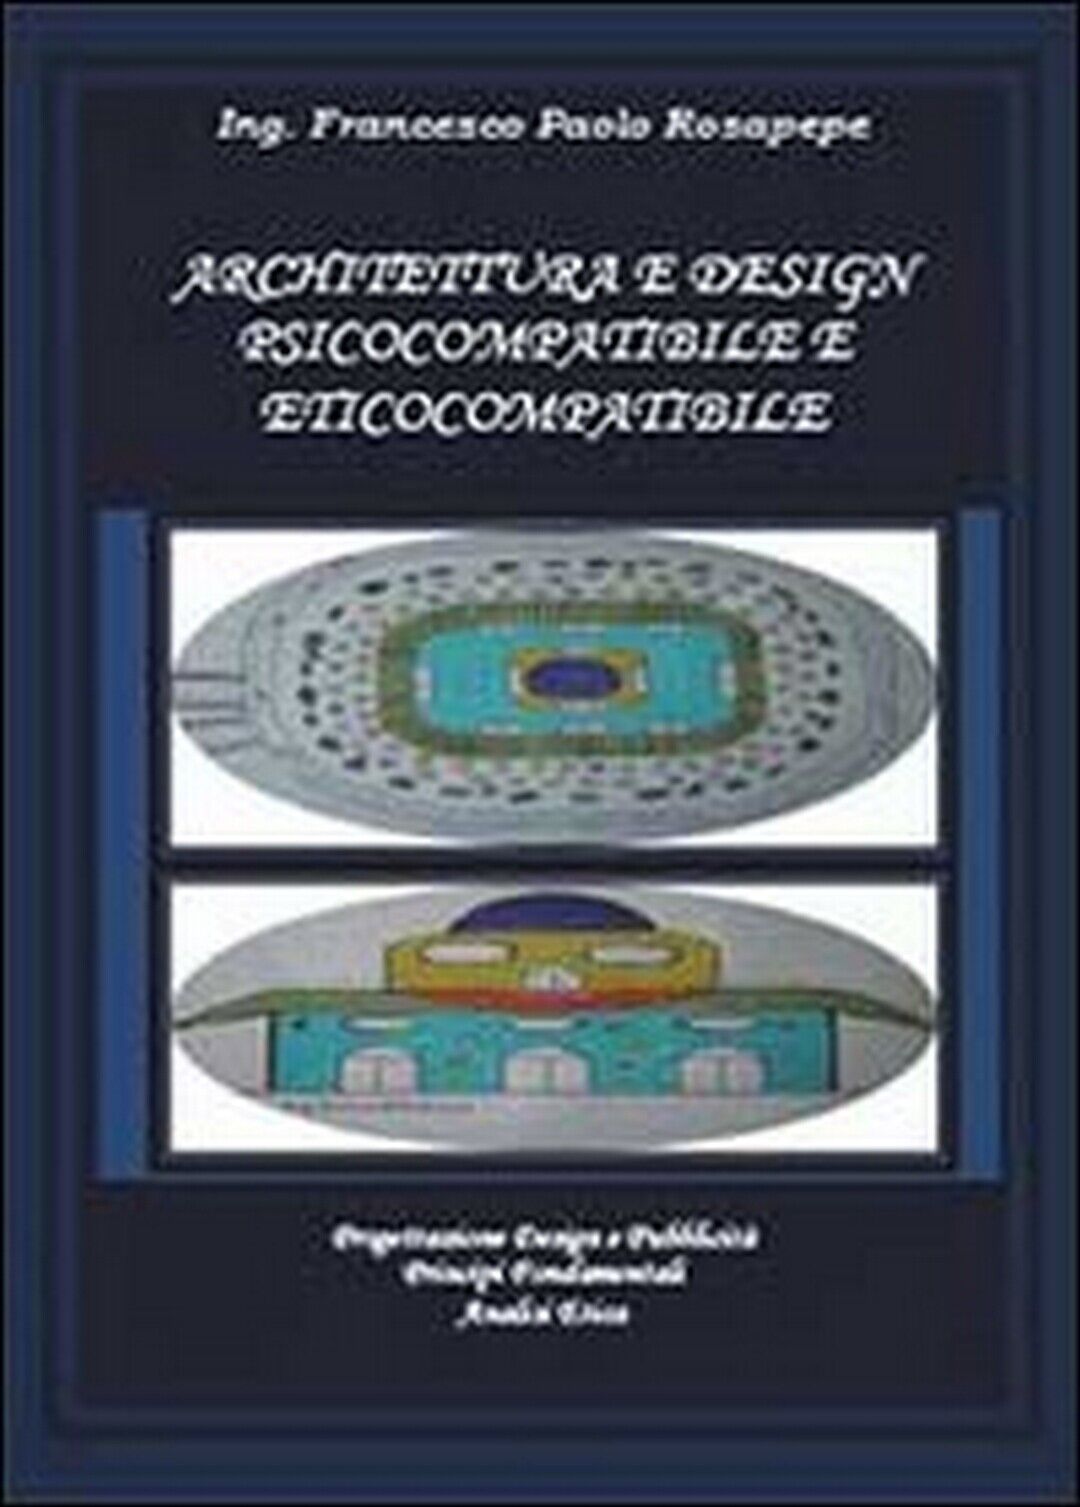 Architettura e design psicocompatibile e eticocompatibile, Francesco P. Rosapepe